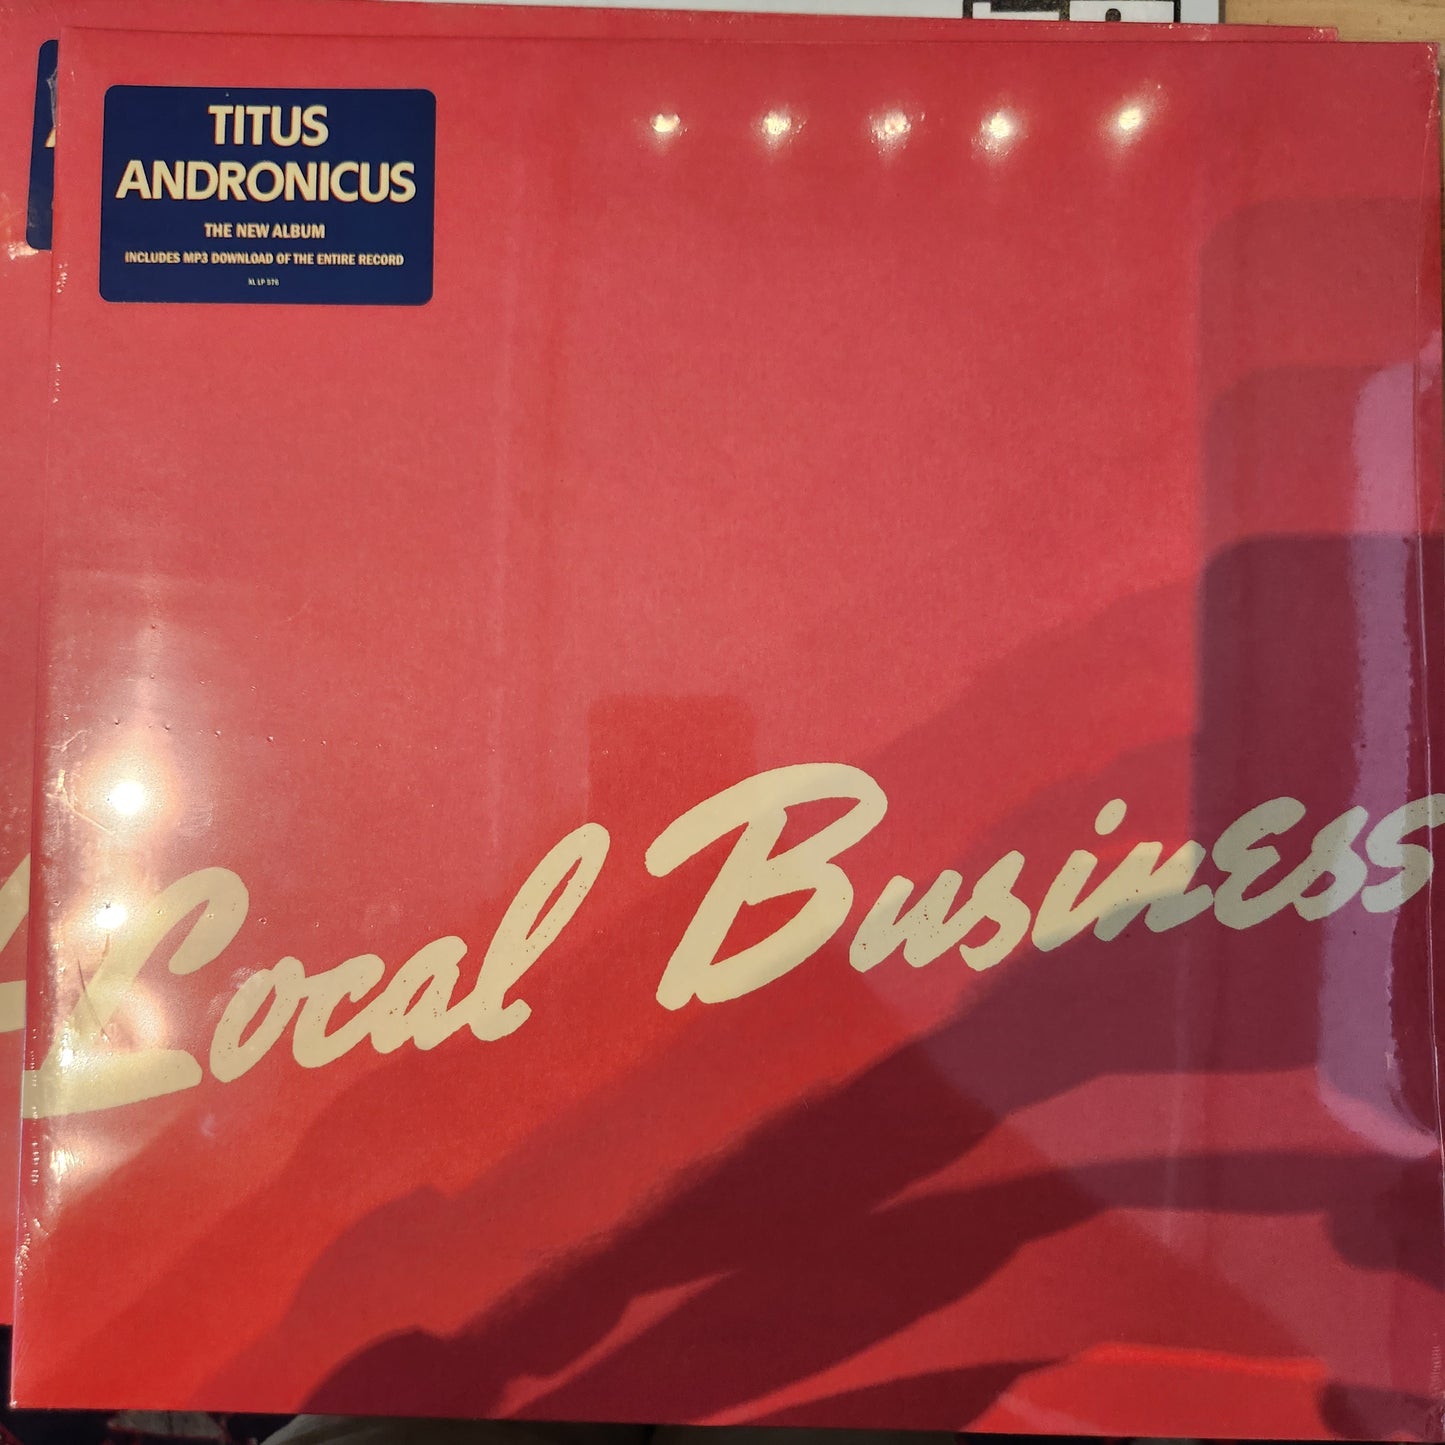 Titus Andronicus - Local Business - Vinyl LP